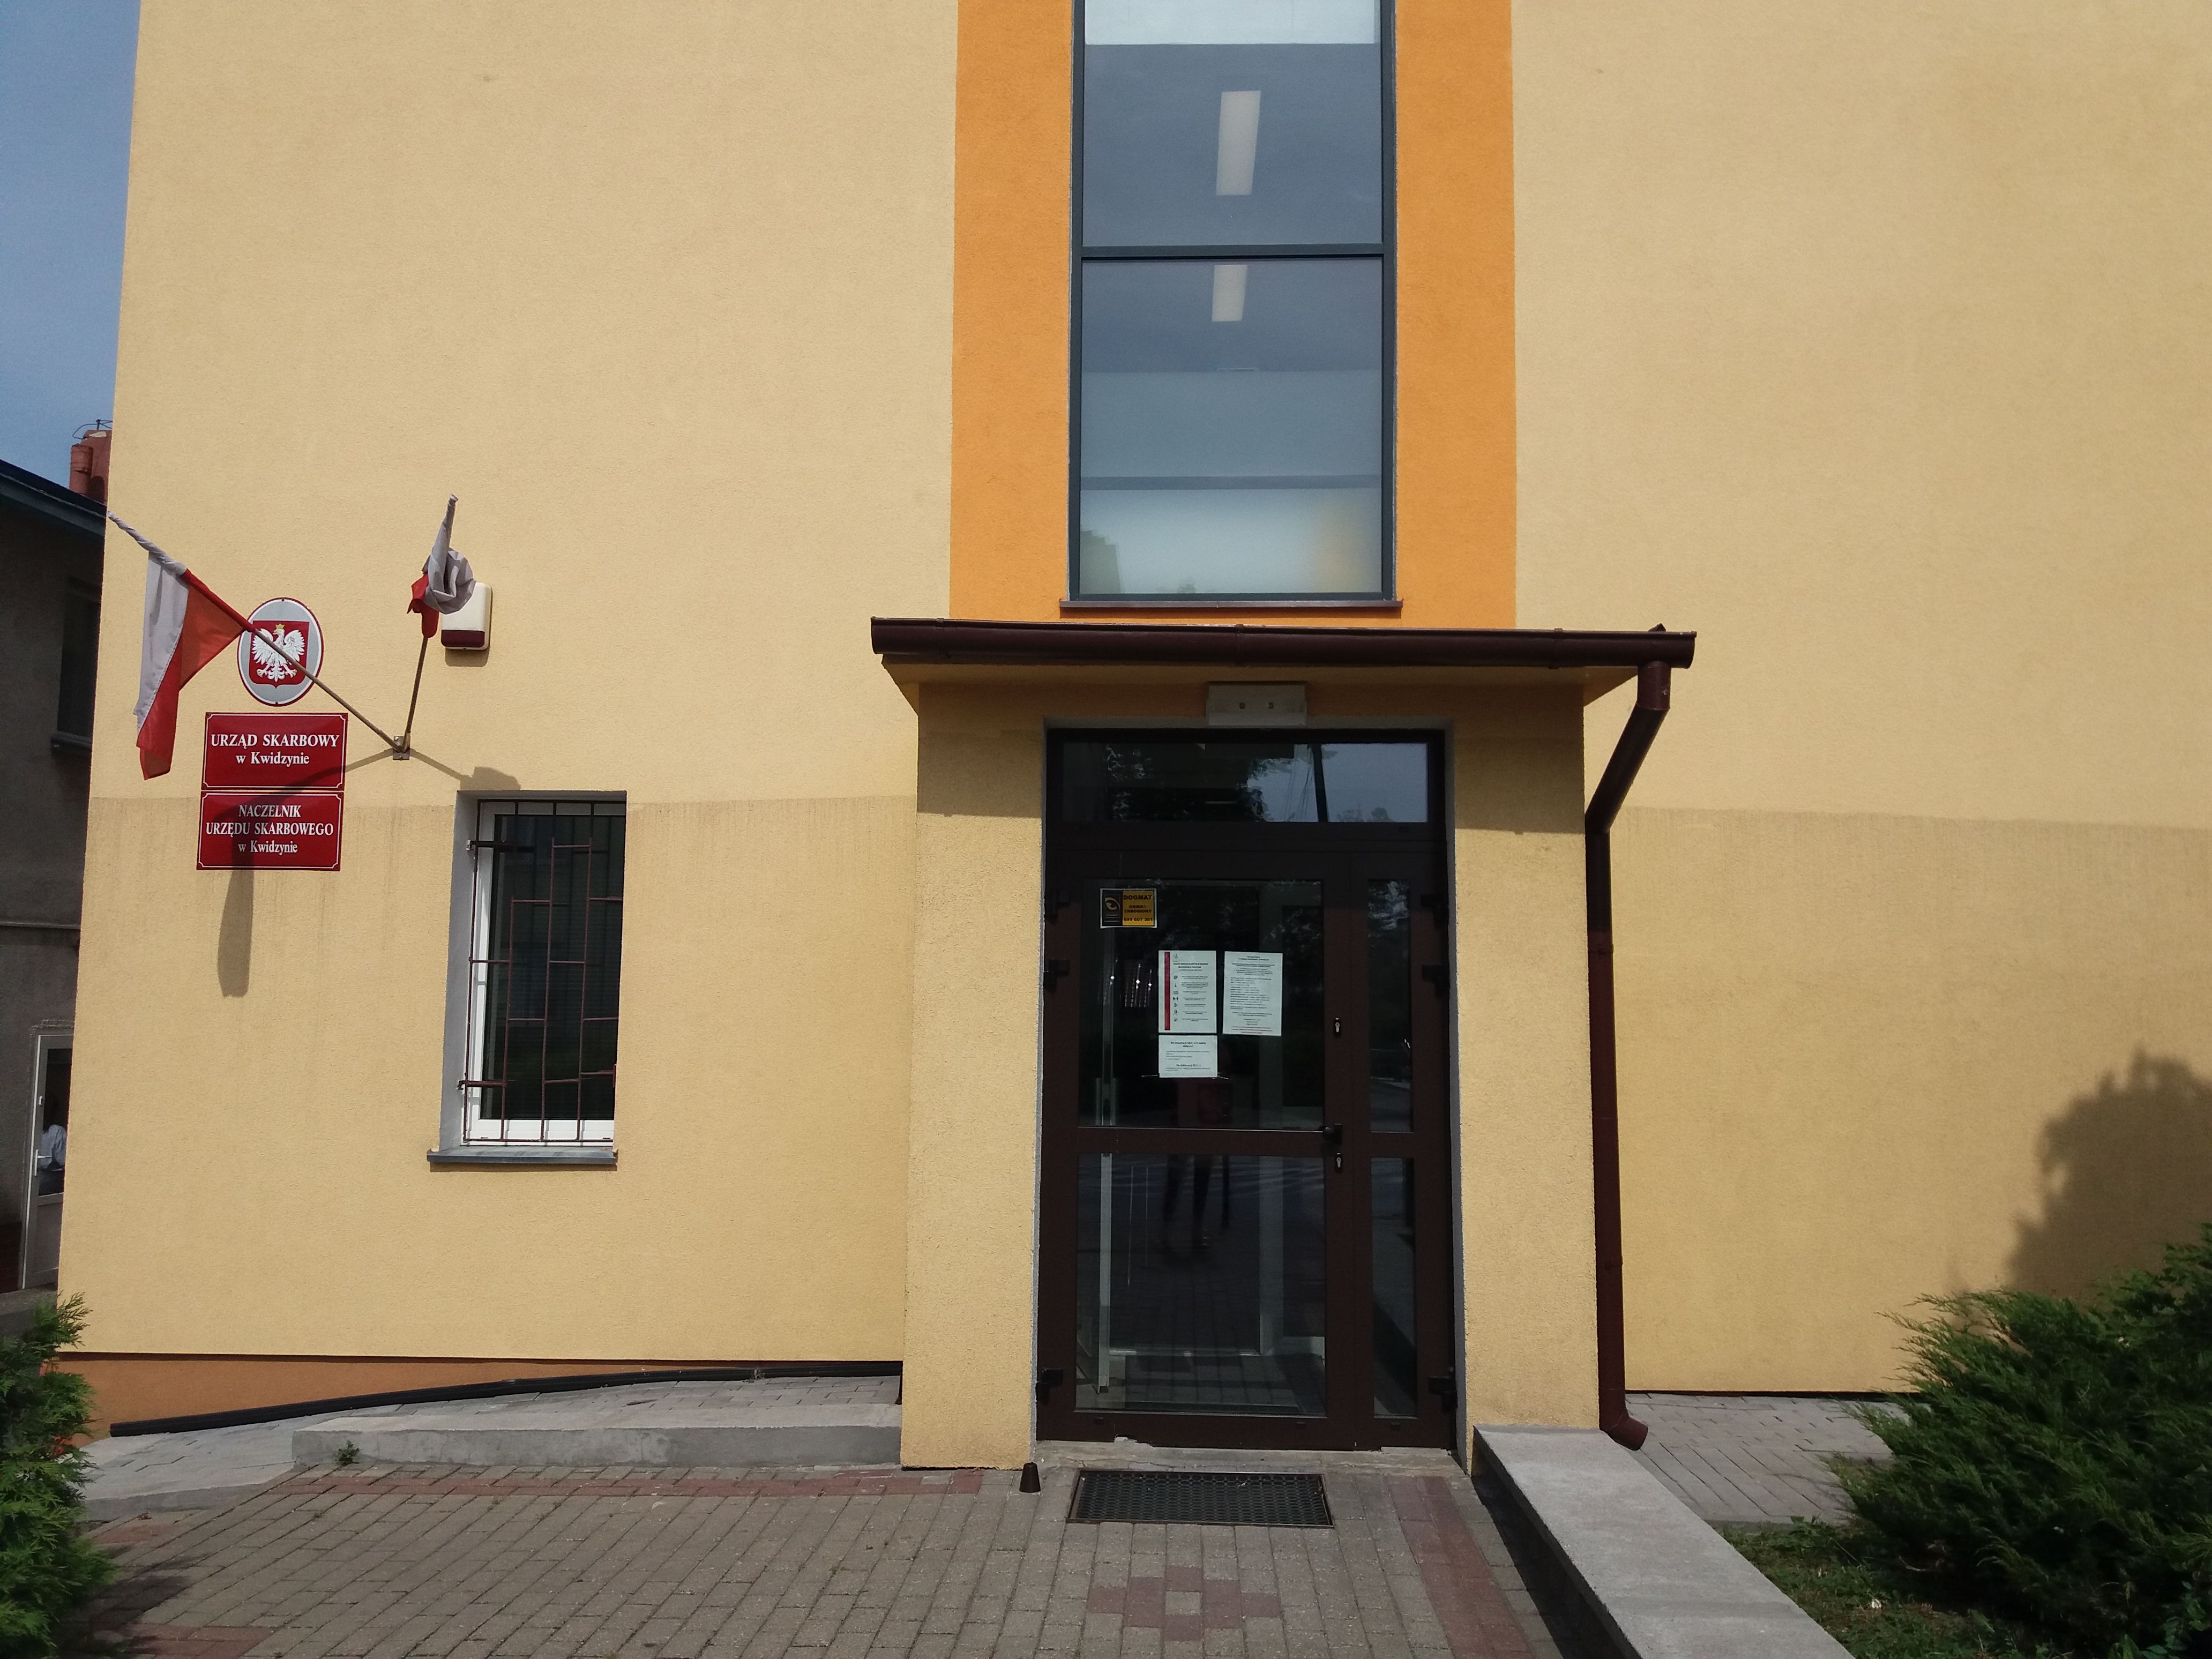 Budynek o jasnej elewacji, w którym znajduje się siedziba Urzędu Skarbowego w Kwidzynie